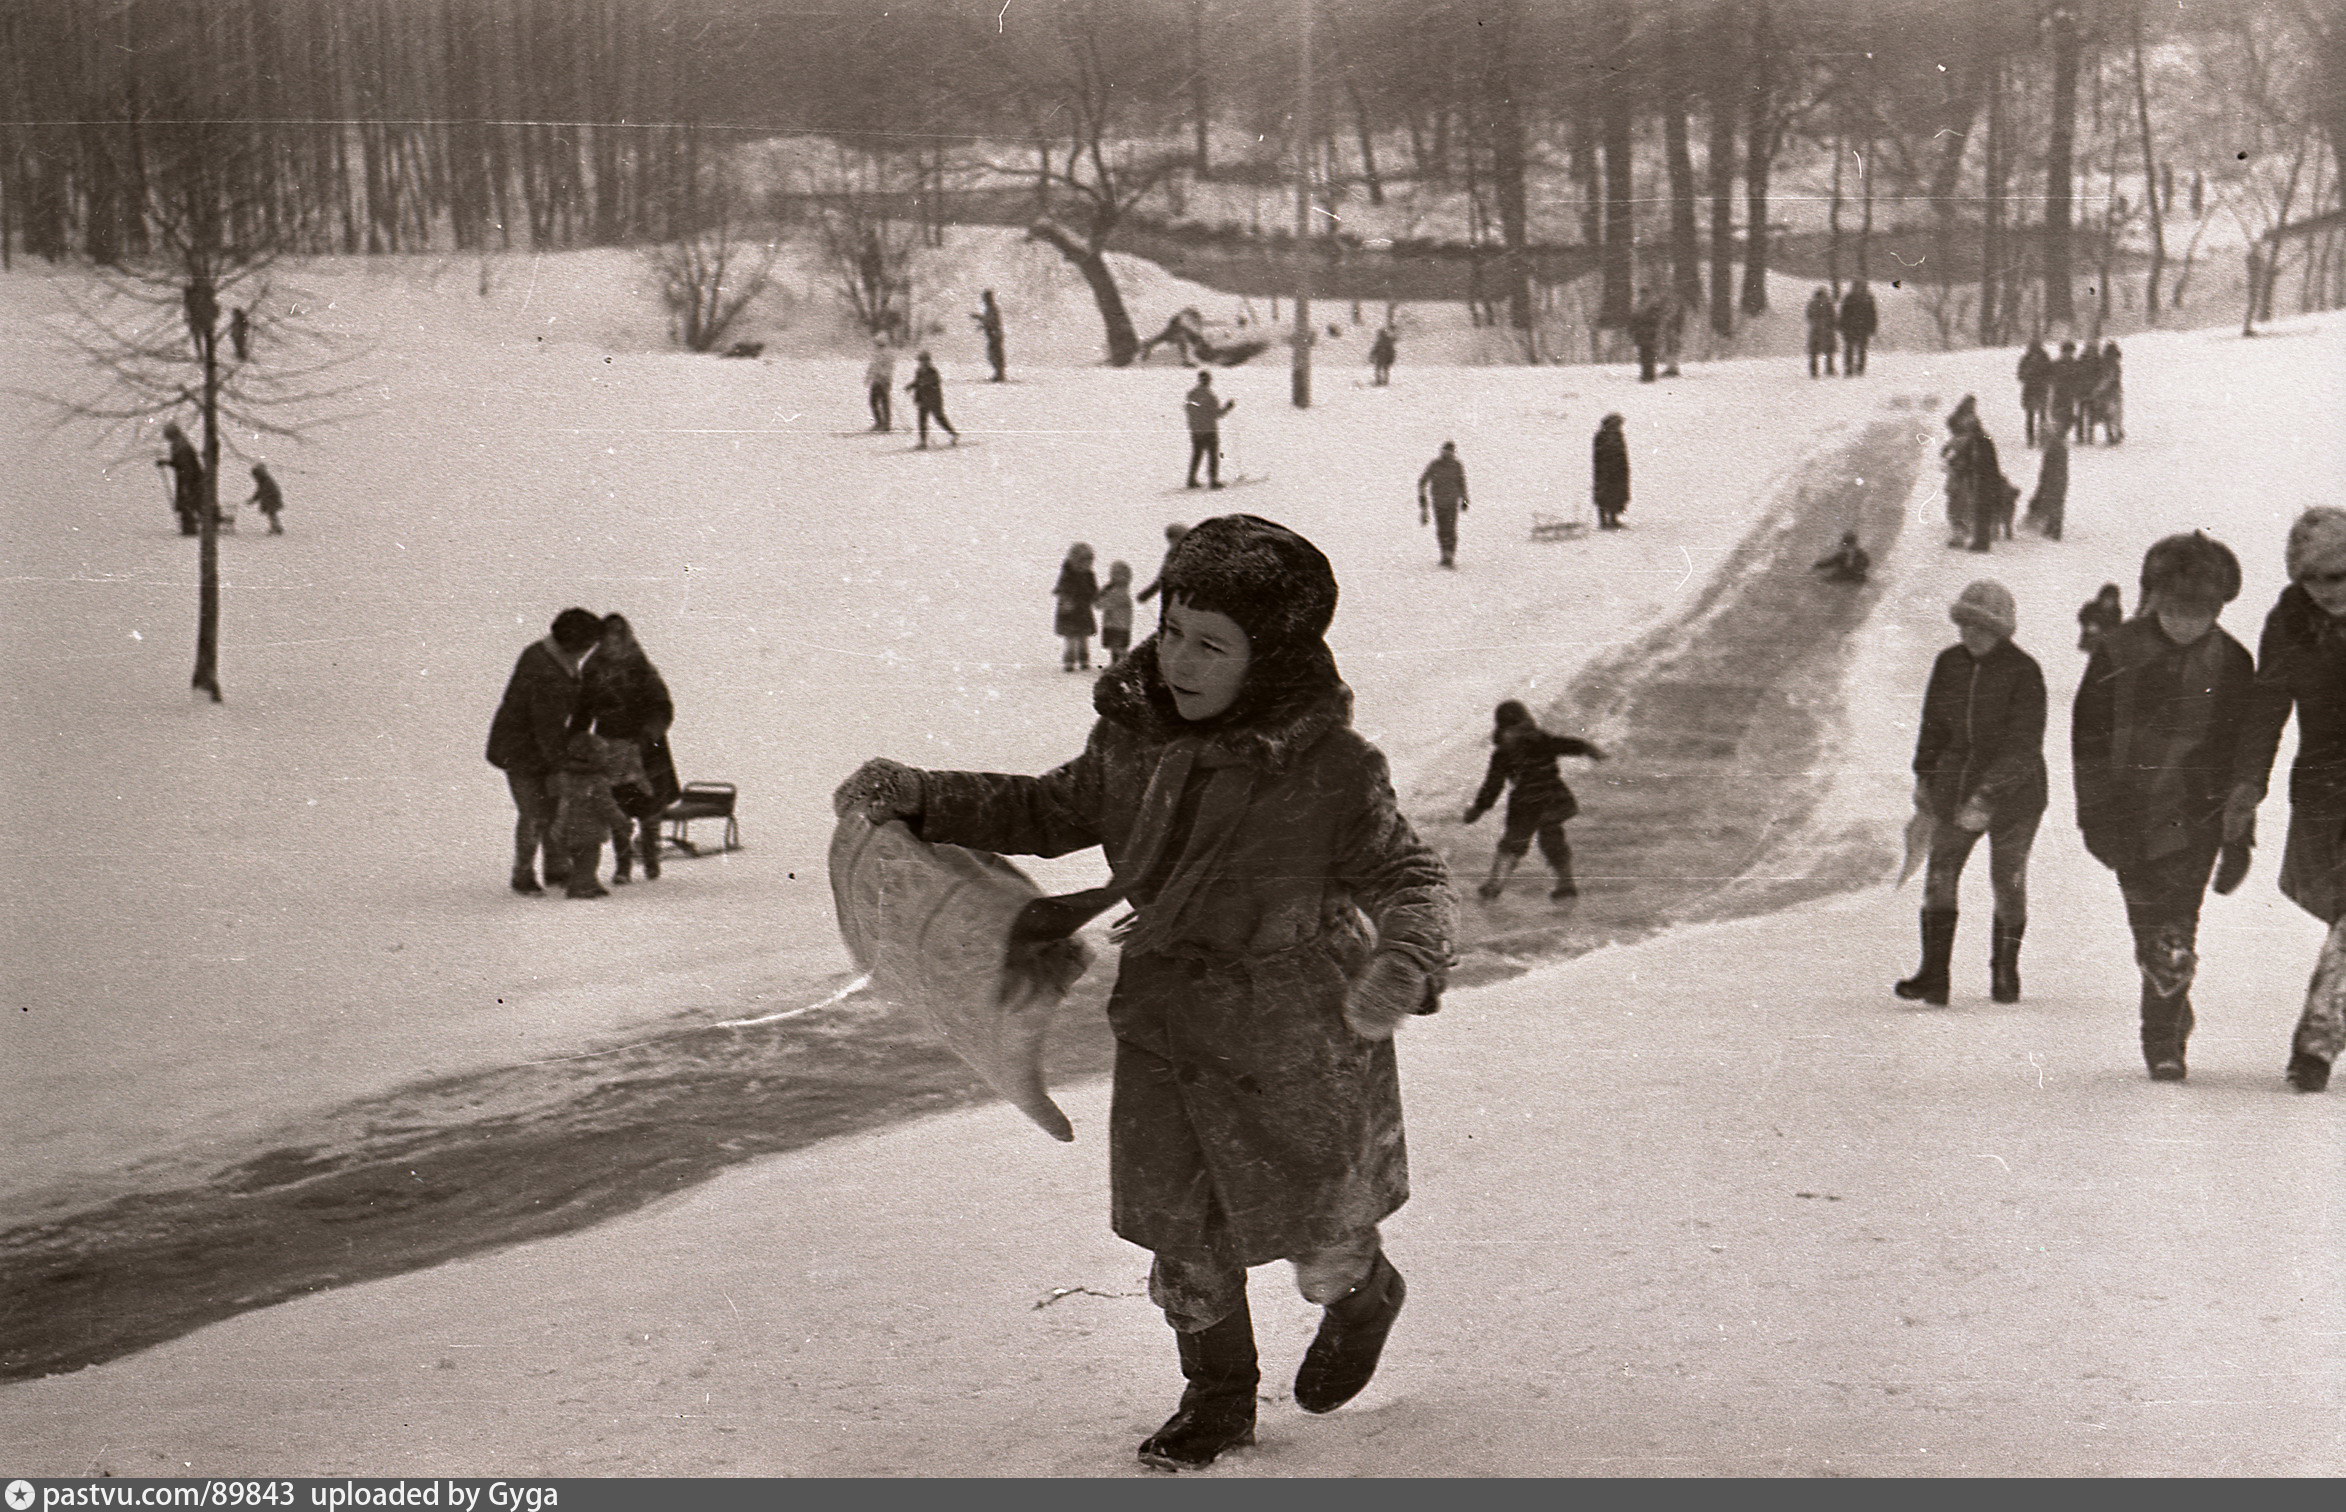 Кузьминский парк 60е годы. Советское детство. Советское детство . Катание с горки. Советские дети катаются с горки. Привет из детства вернуться в прошлое